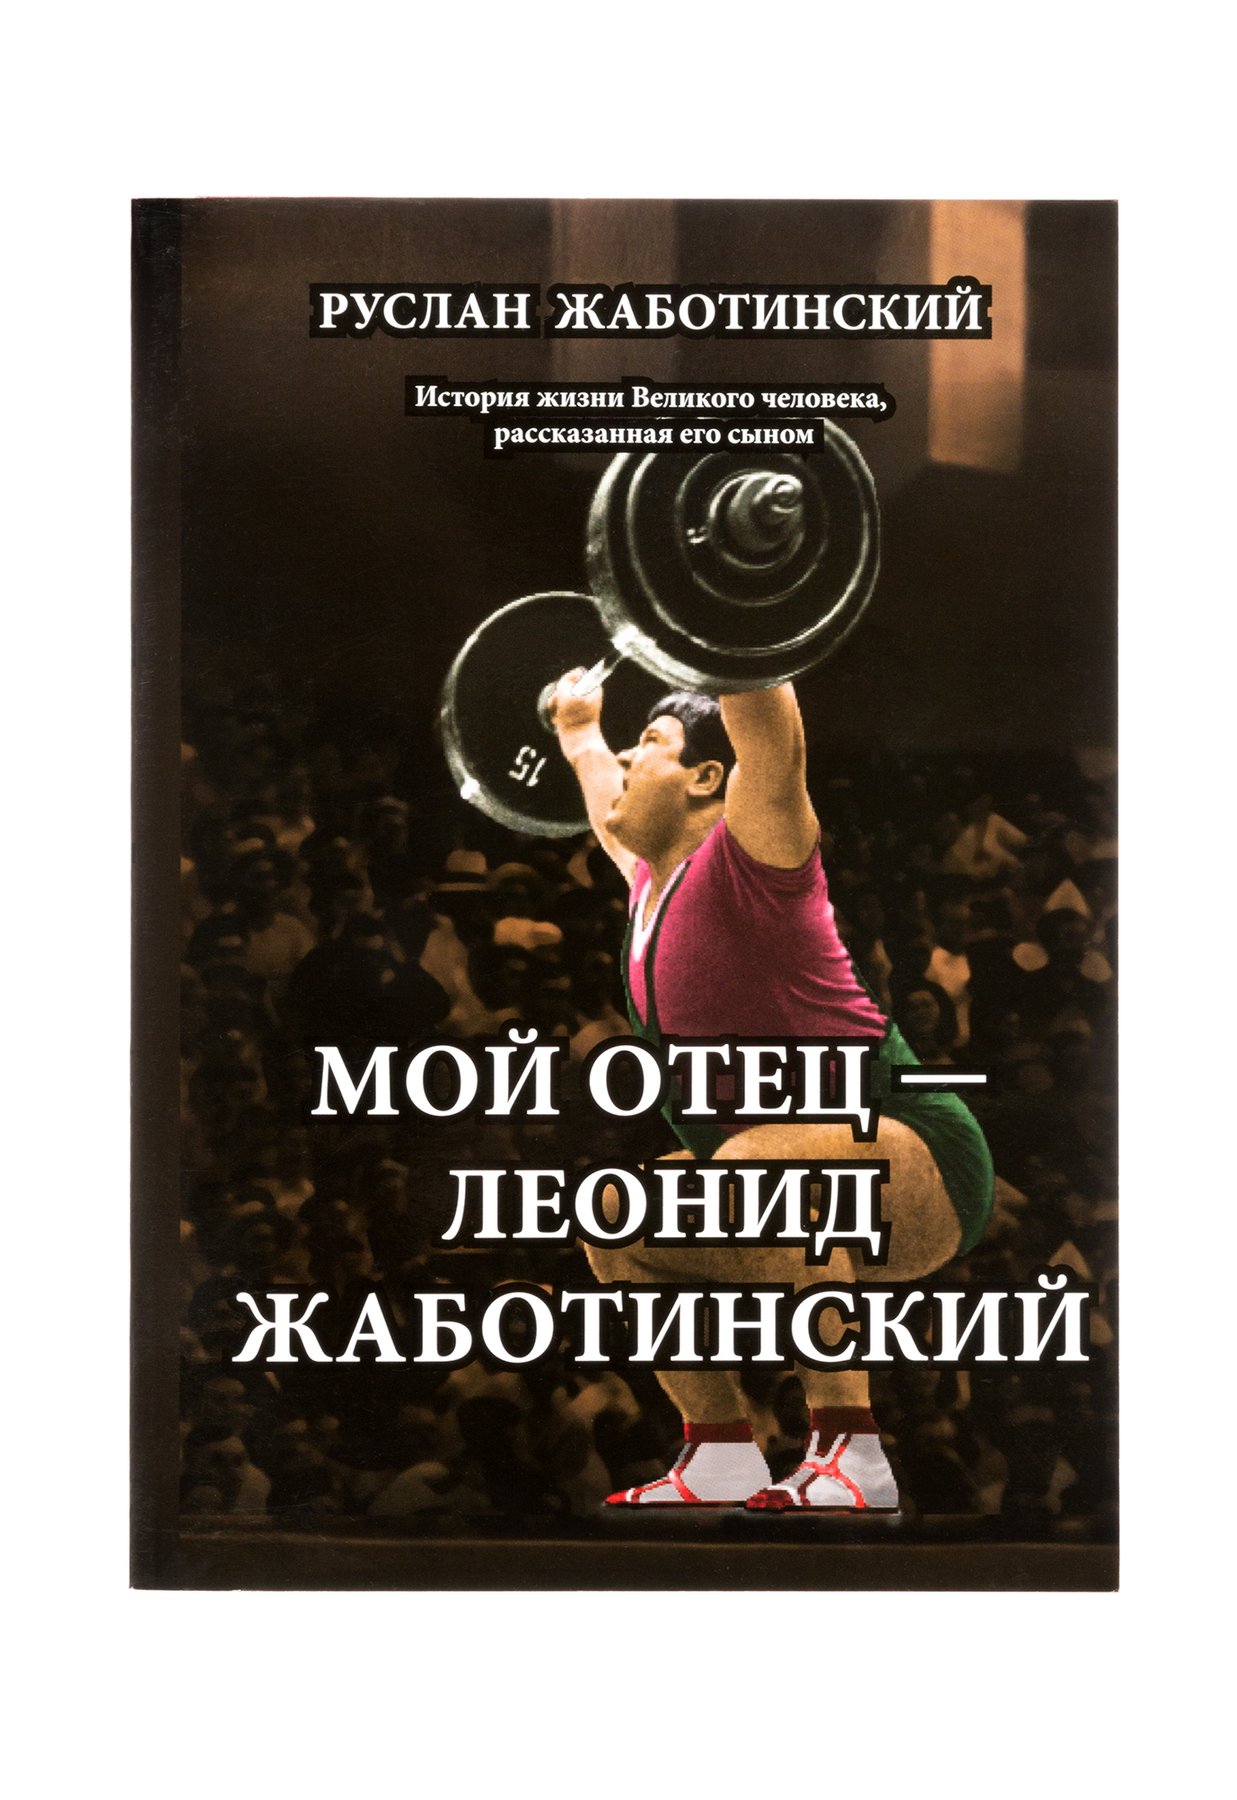 Книга Мій батько Леонід Жаботинський - PDF